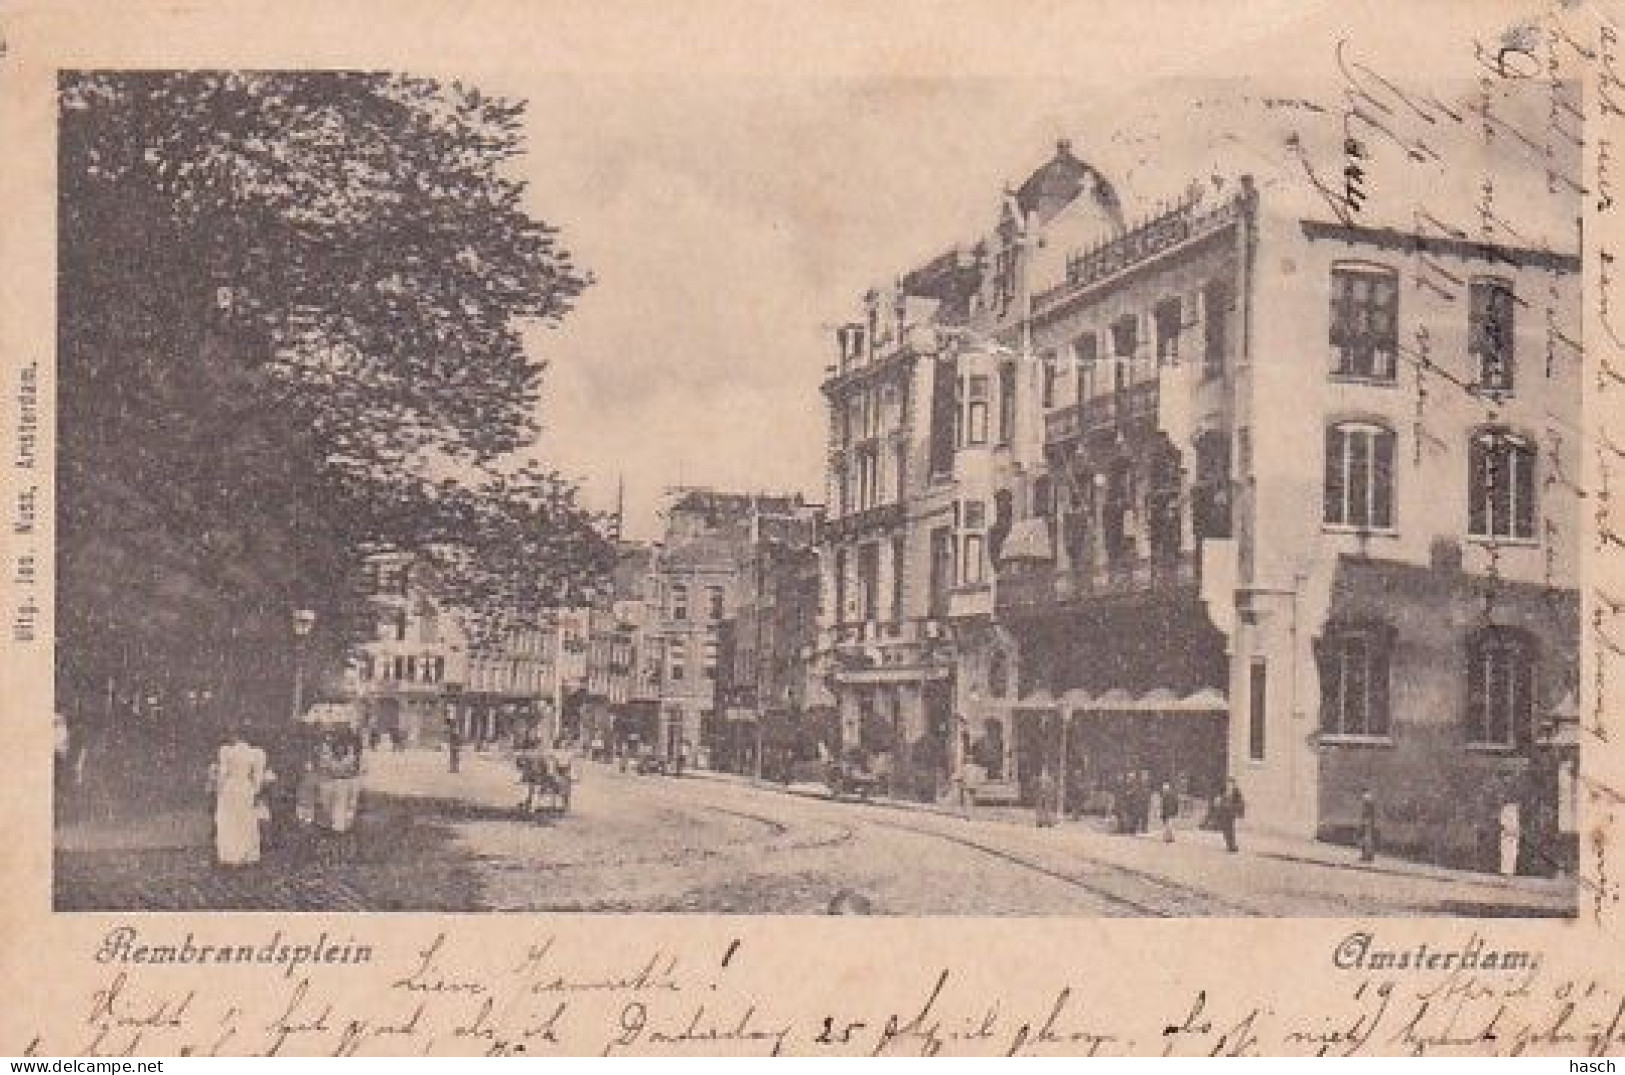 1838	36	Amsterdam, Rembrandtsplein 1901 (rechtsboven Vouwen Zie Achterkant) - Amsterdam